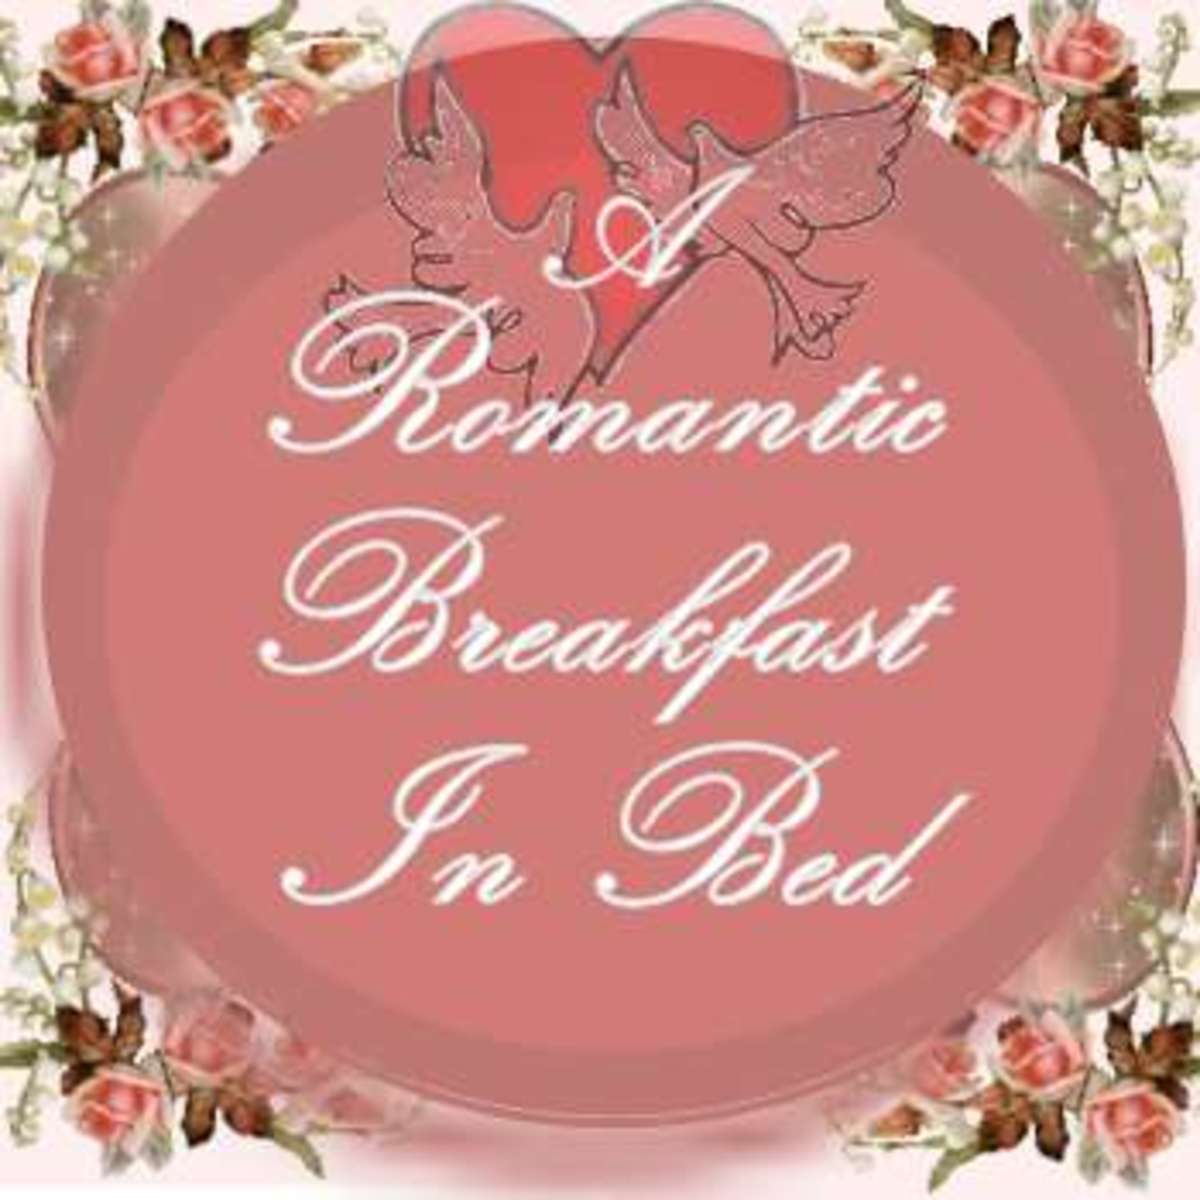 A Romantic Breakfast in Bed